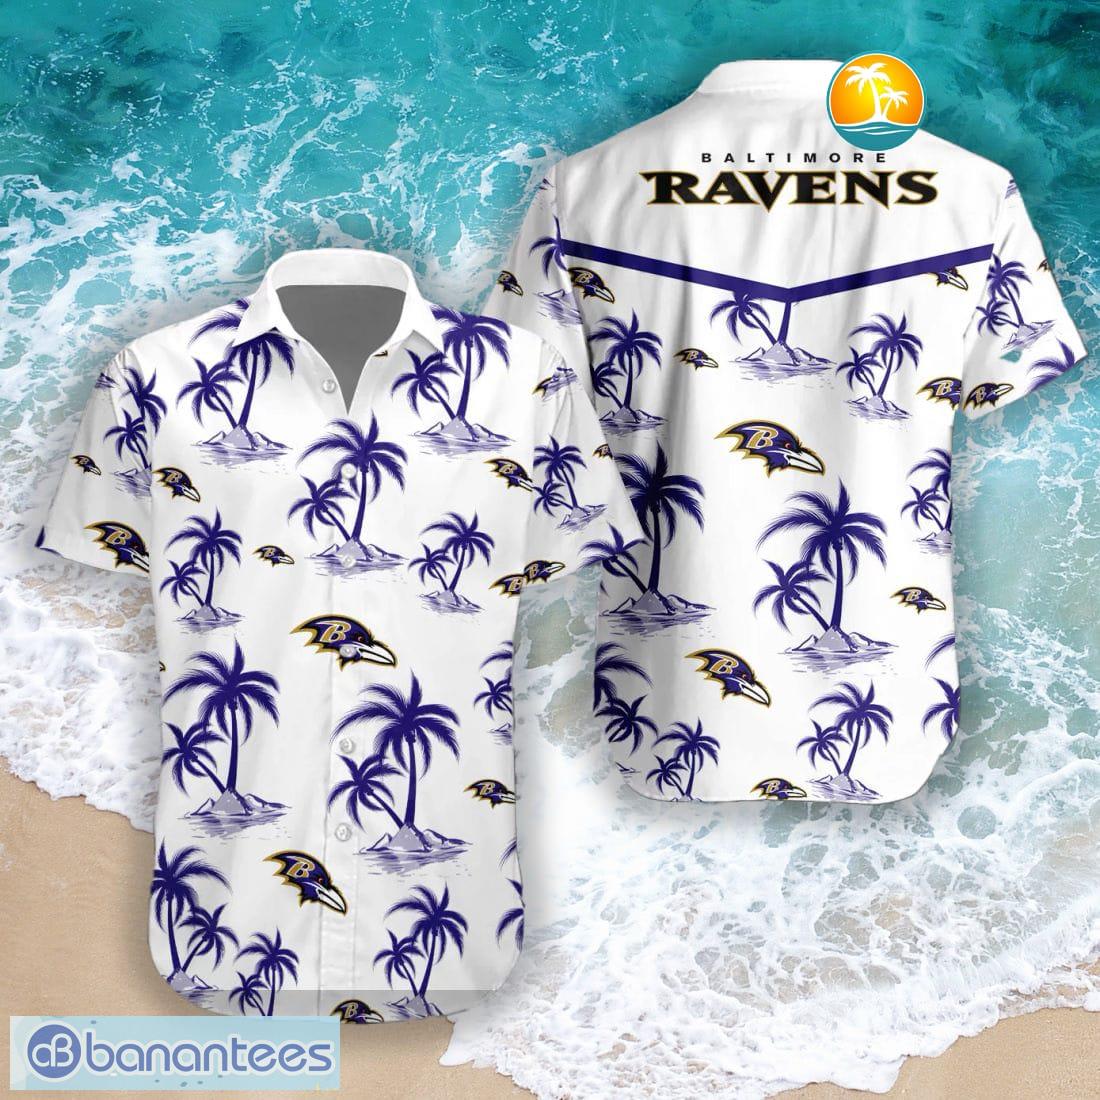 baltimore ravens button up shirts